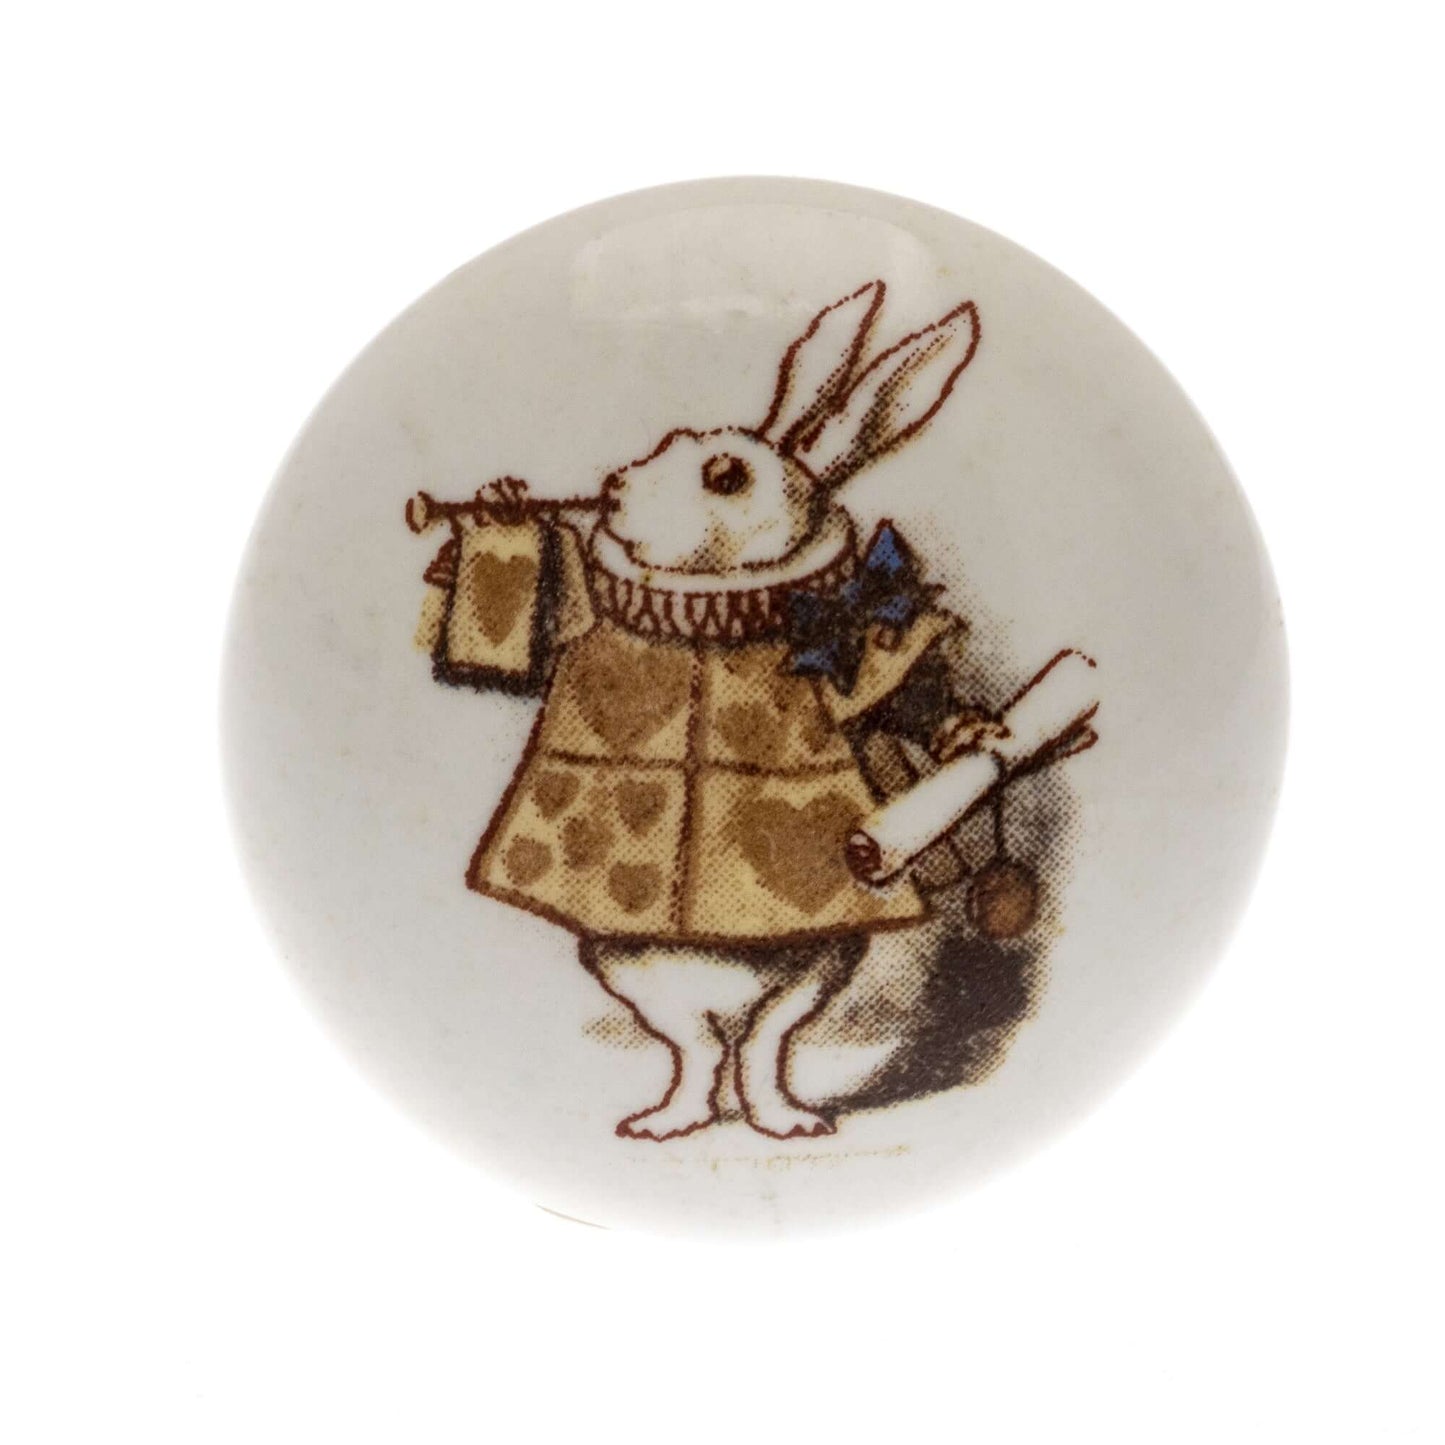 Ceramic Cupboard Knob Alice in Colour 'The Herald' Rabbit on White